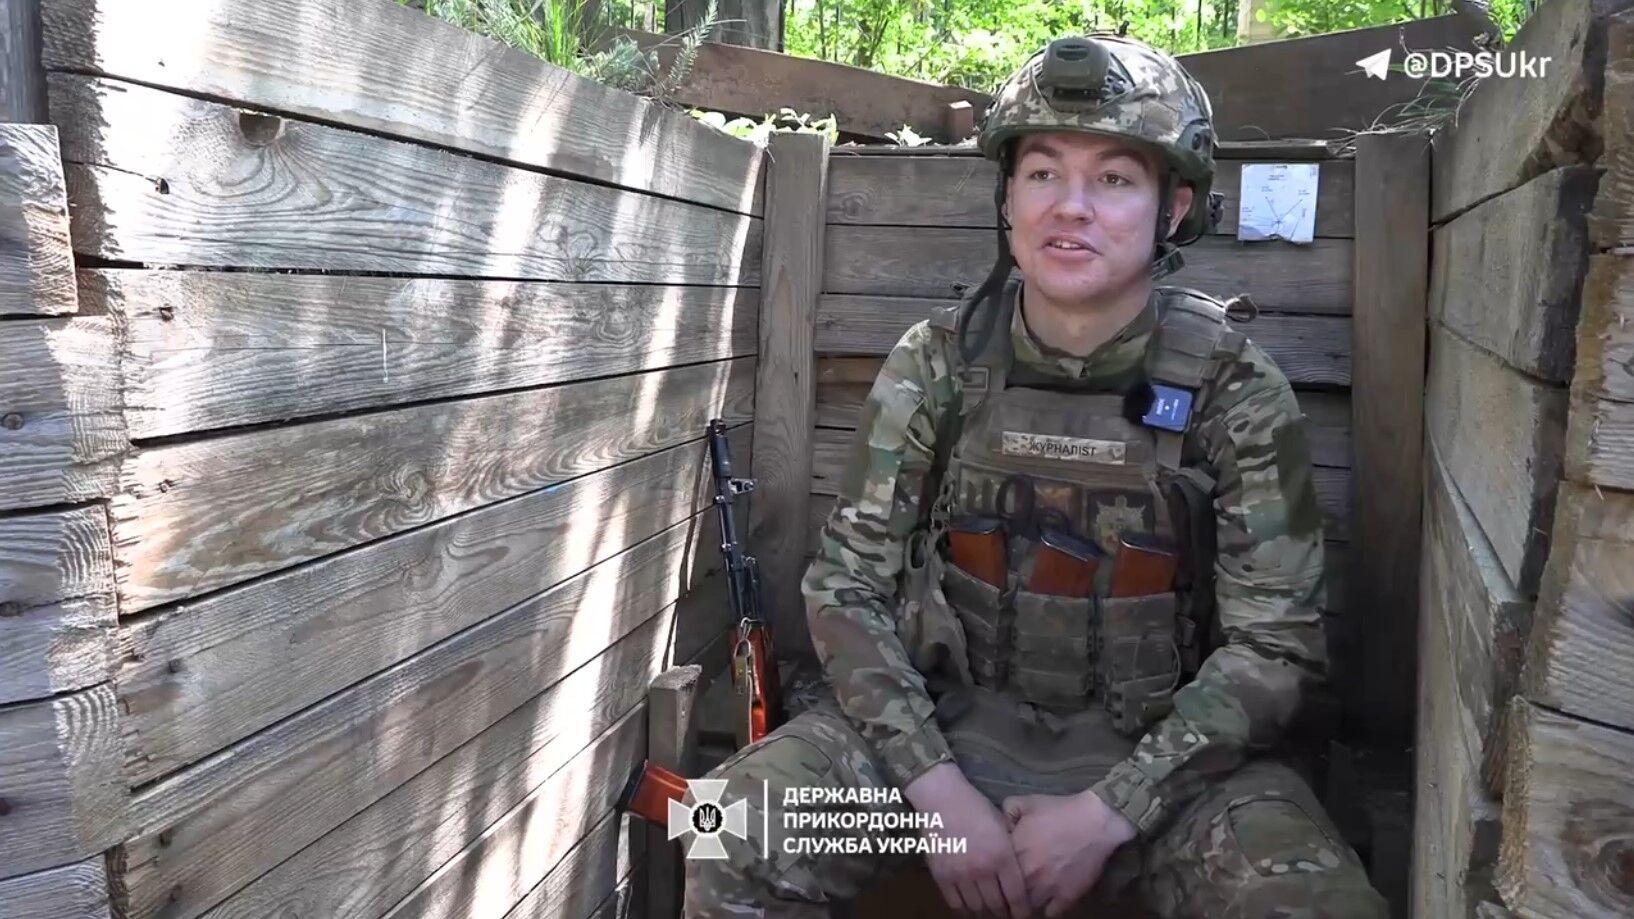 Кричал, что свой: житель Луганщины, мобилизованный оккупантами, вышел на позиции украинских пограничников. Видео